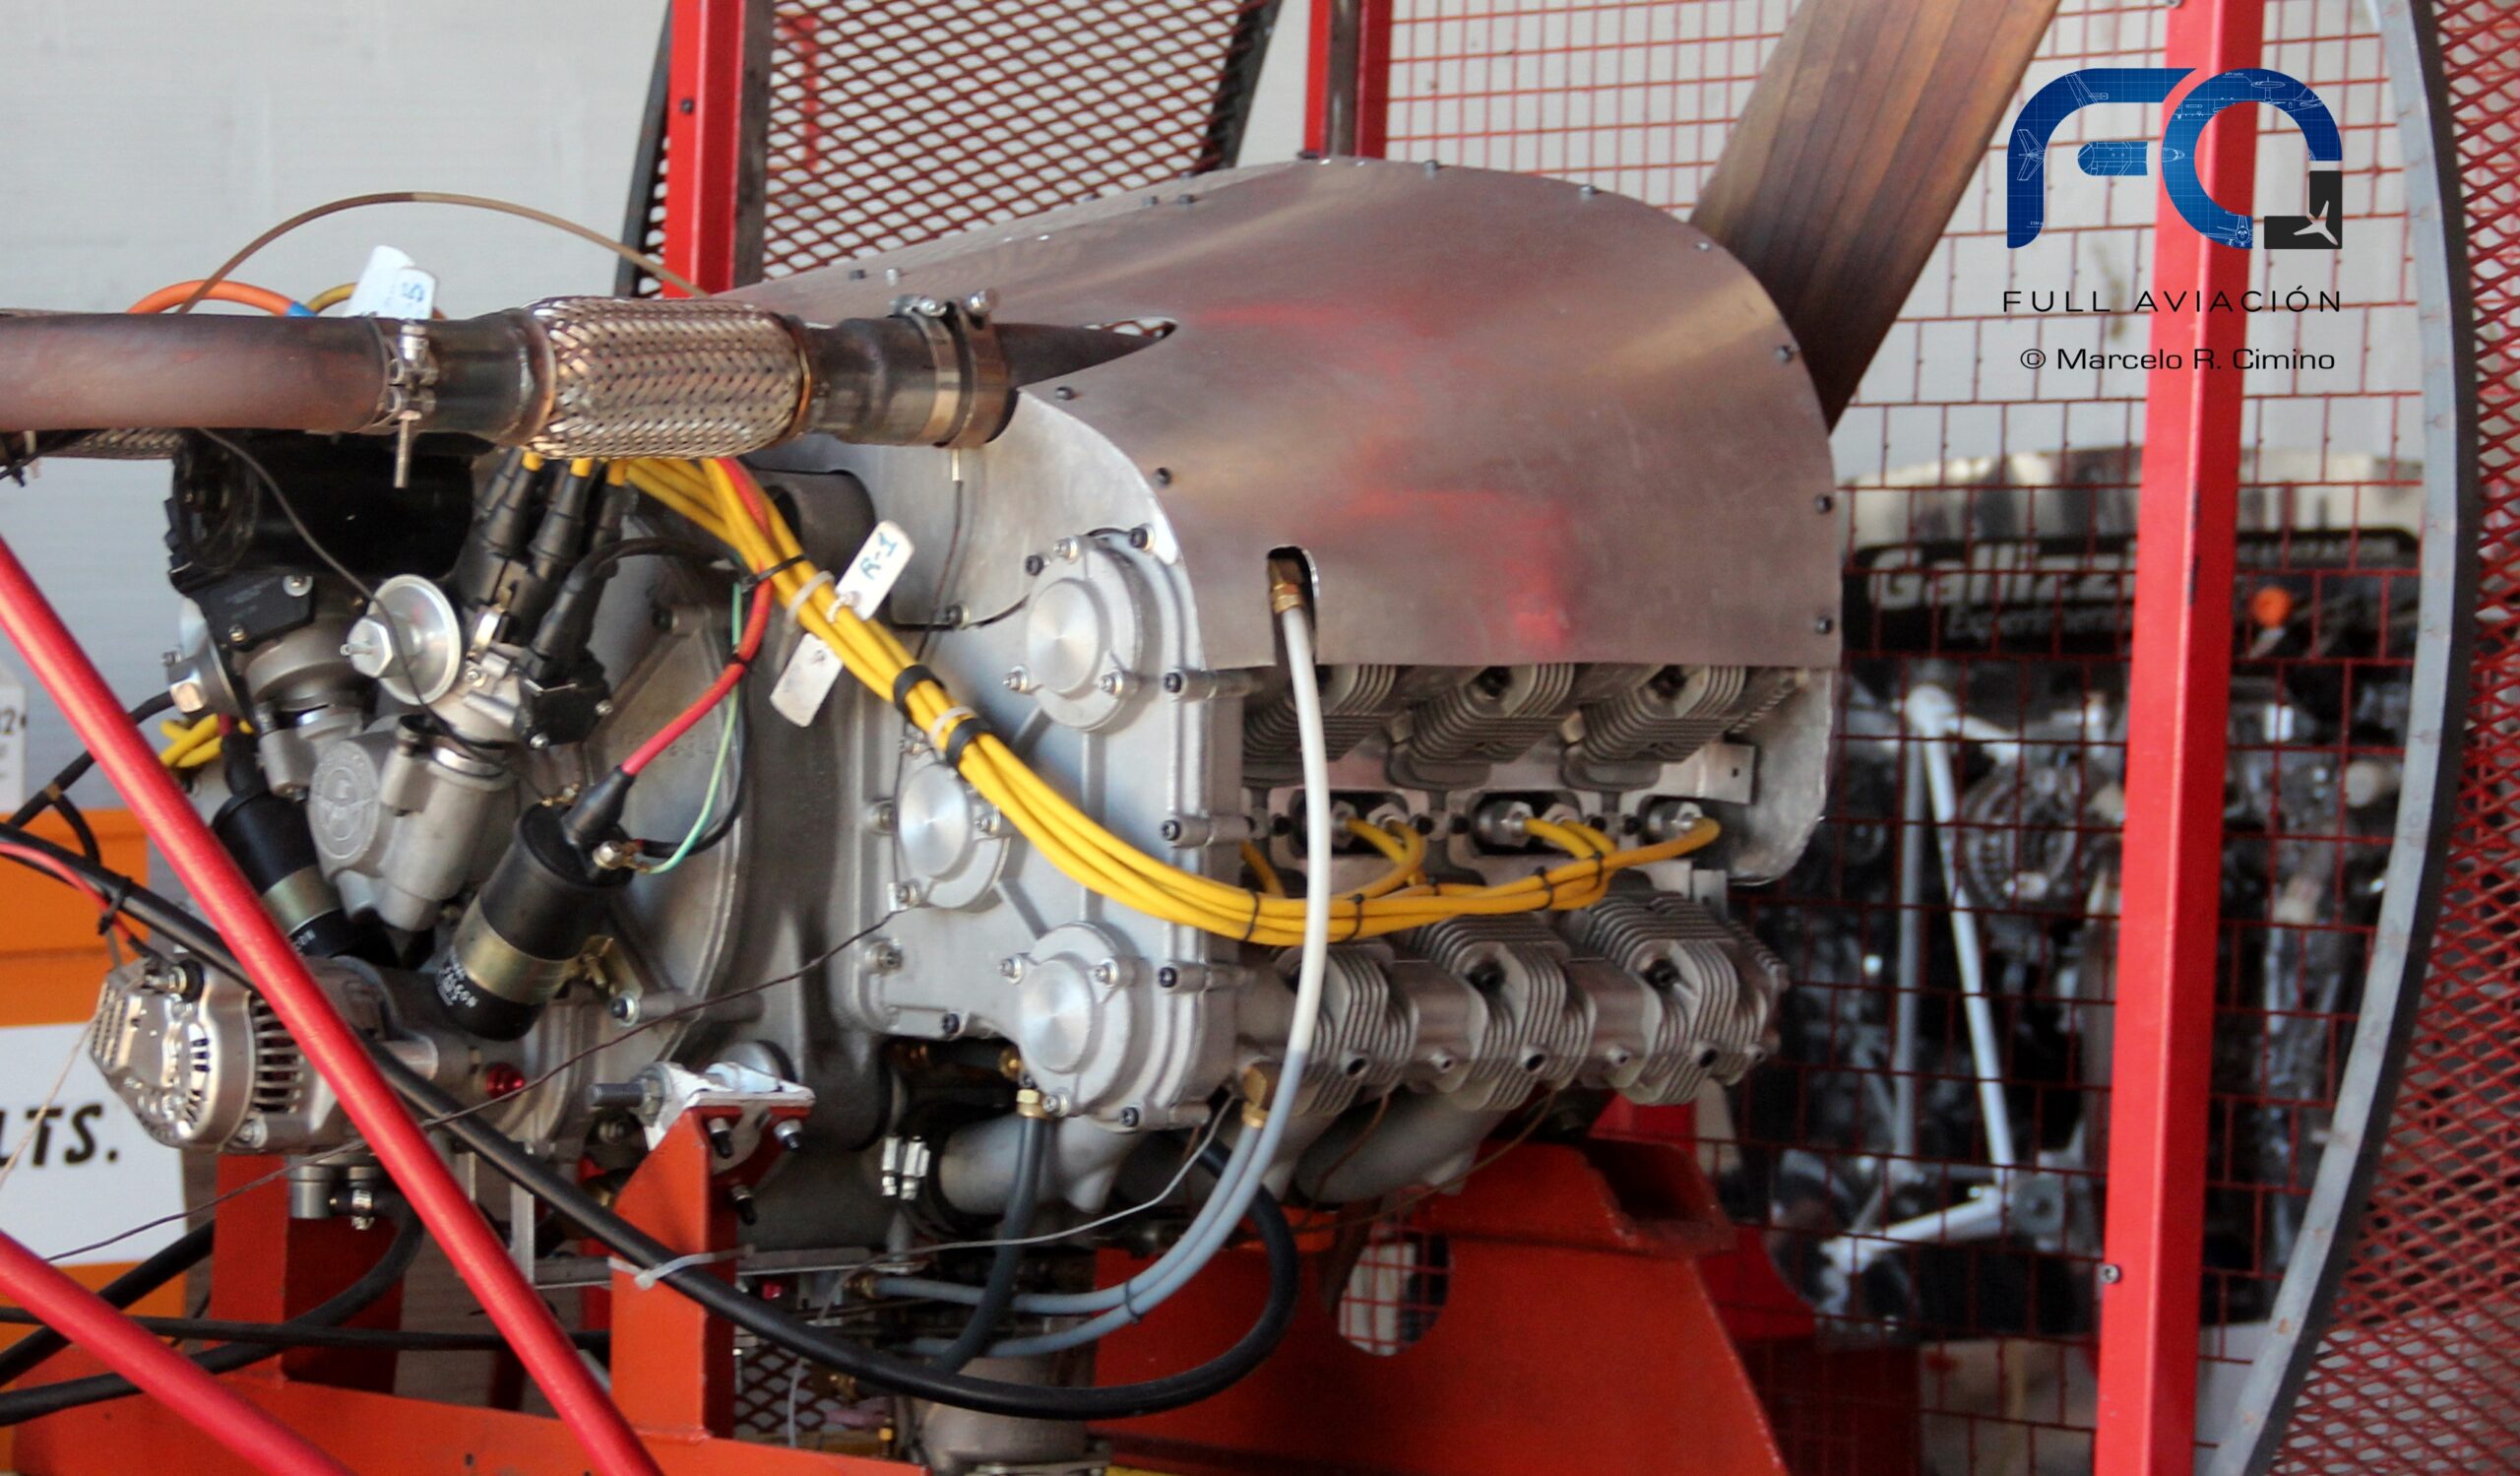 Bokeptante Vs Bocahsd - PresentaciÃ³n del motor prototipo TM-2600-R | Full AviaciÃ³n